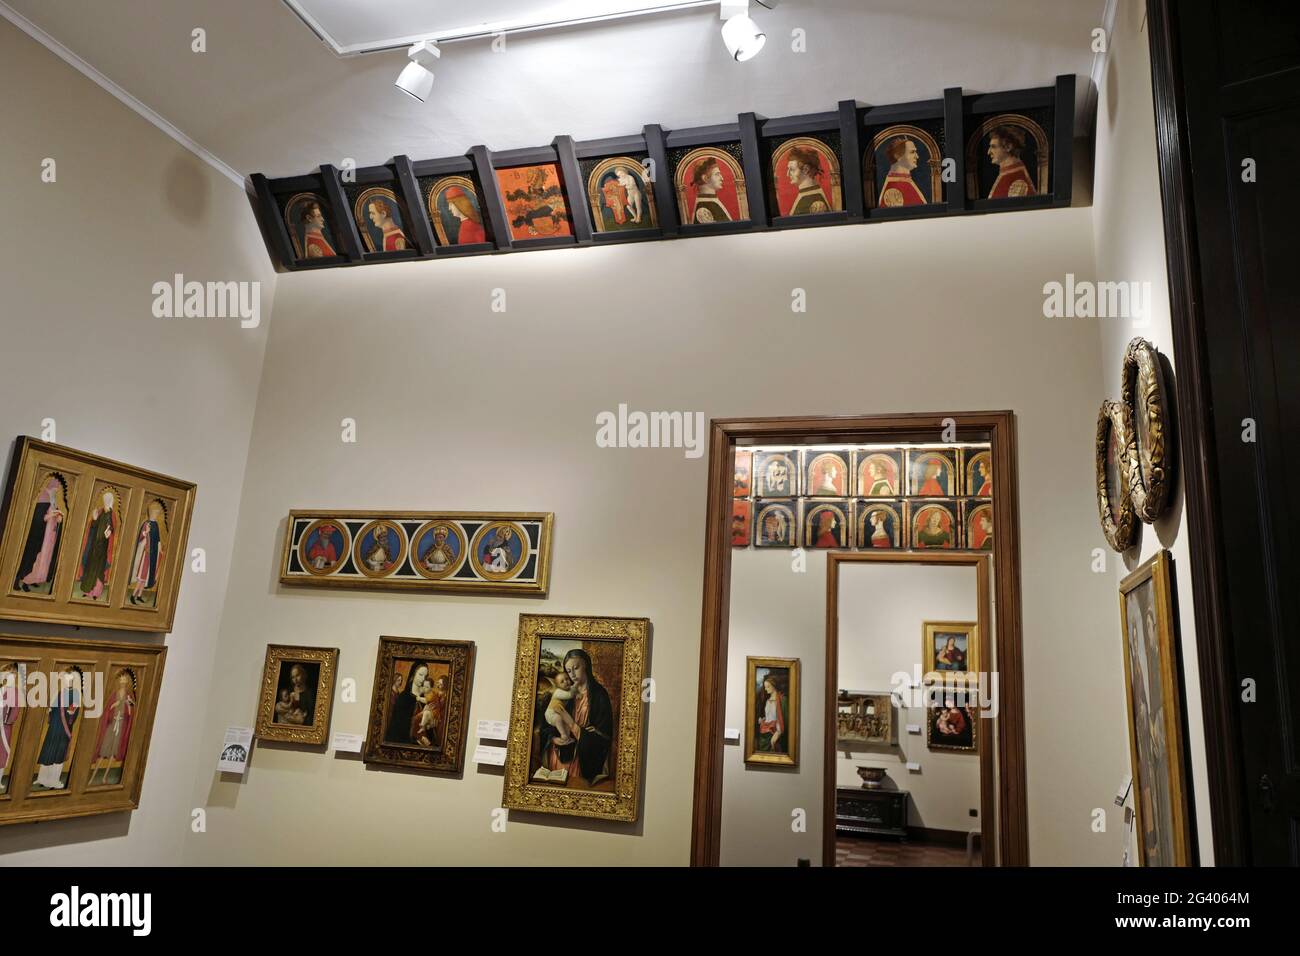 Collection d'art exposée au musée de la maison Poldi Pezzoli, dans le bâtiment historique, dans le centre de Milan. Banque D'Images